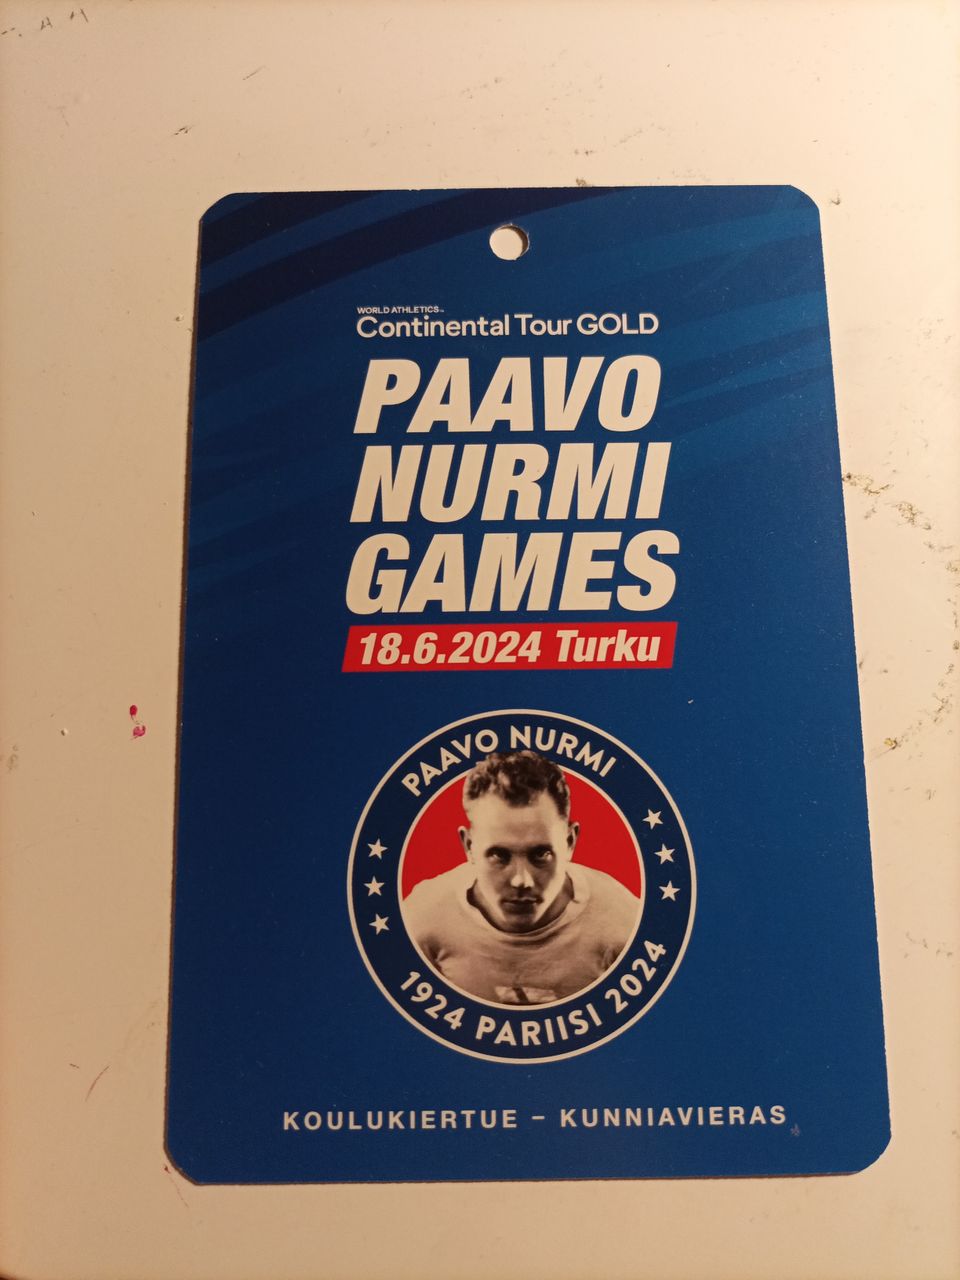 1 x Paavo Nurmi Games vapaalippu